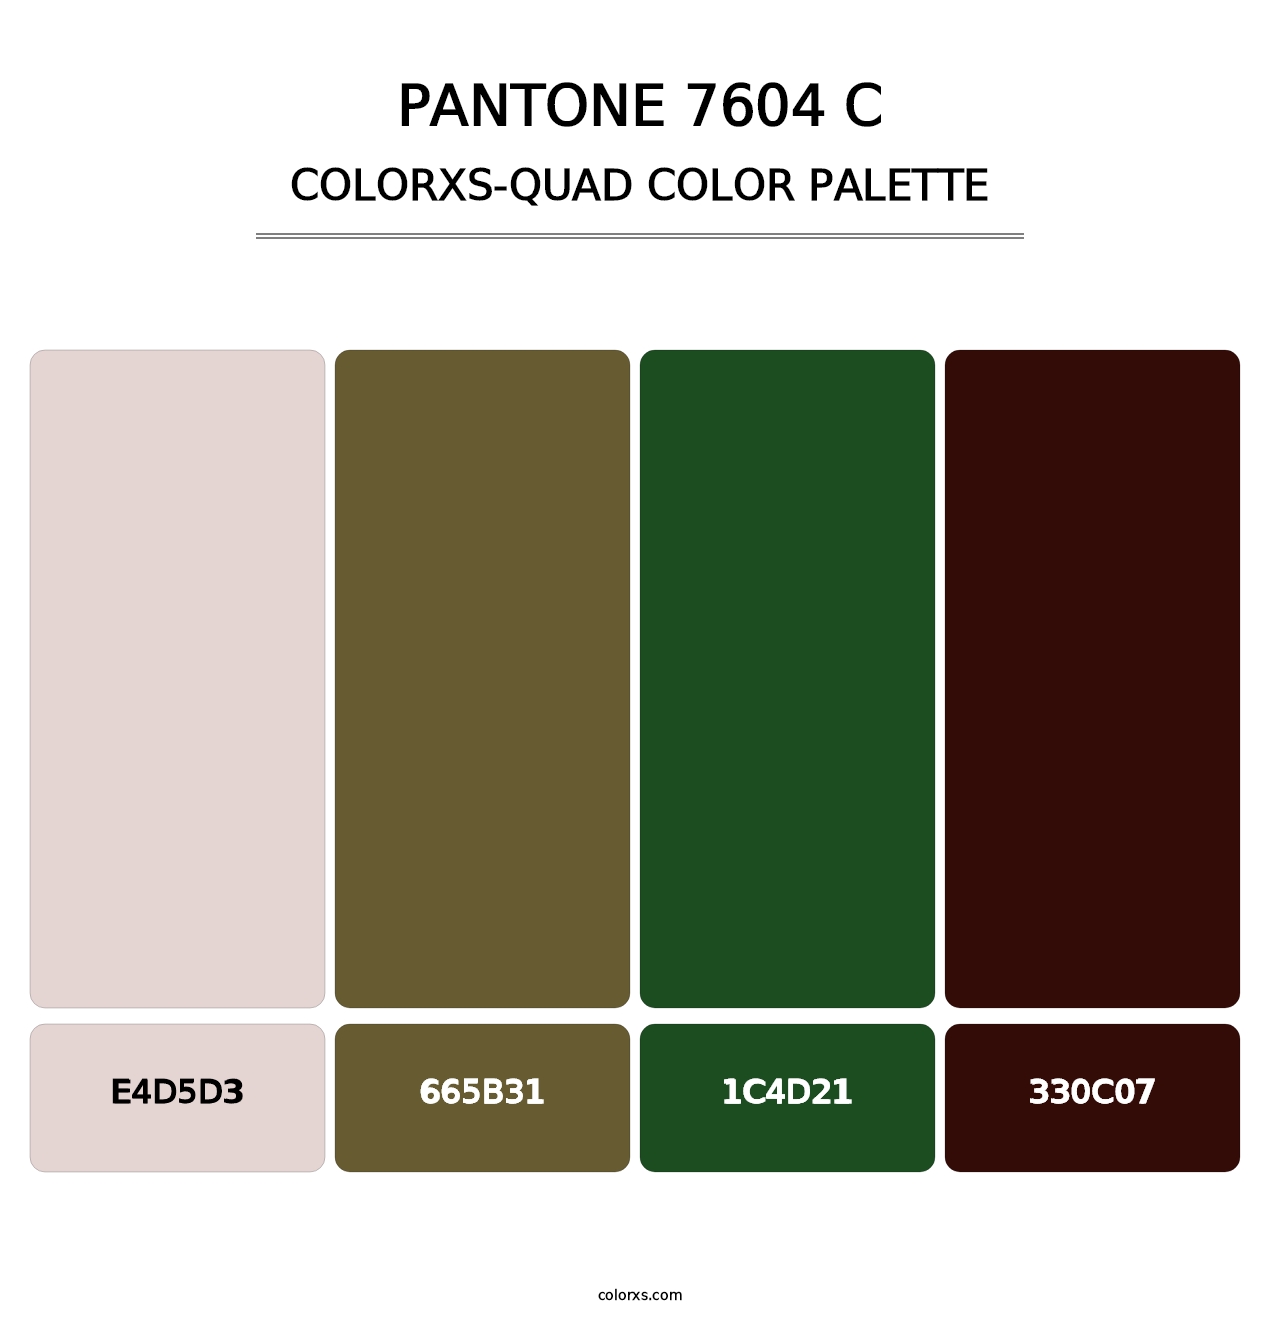 PANTONE 7604 C - Colorxs Quad Palette